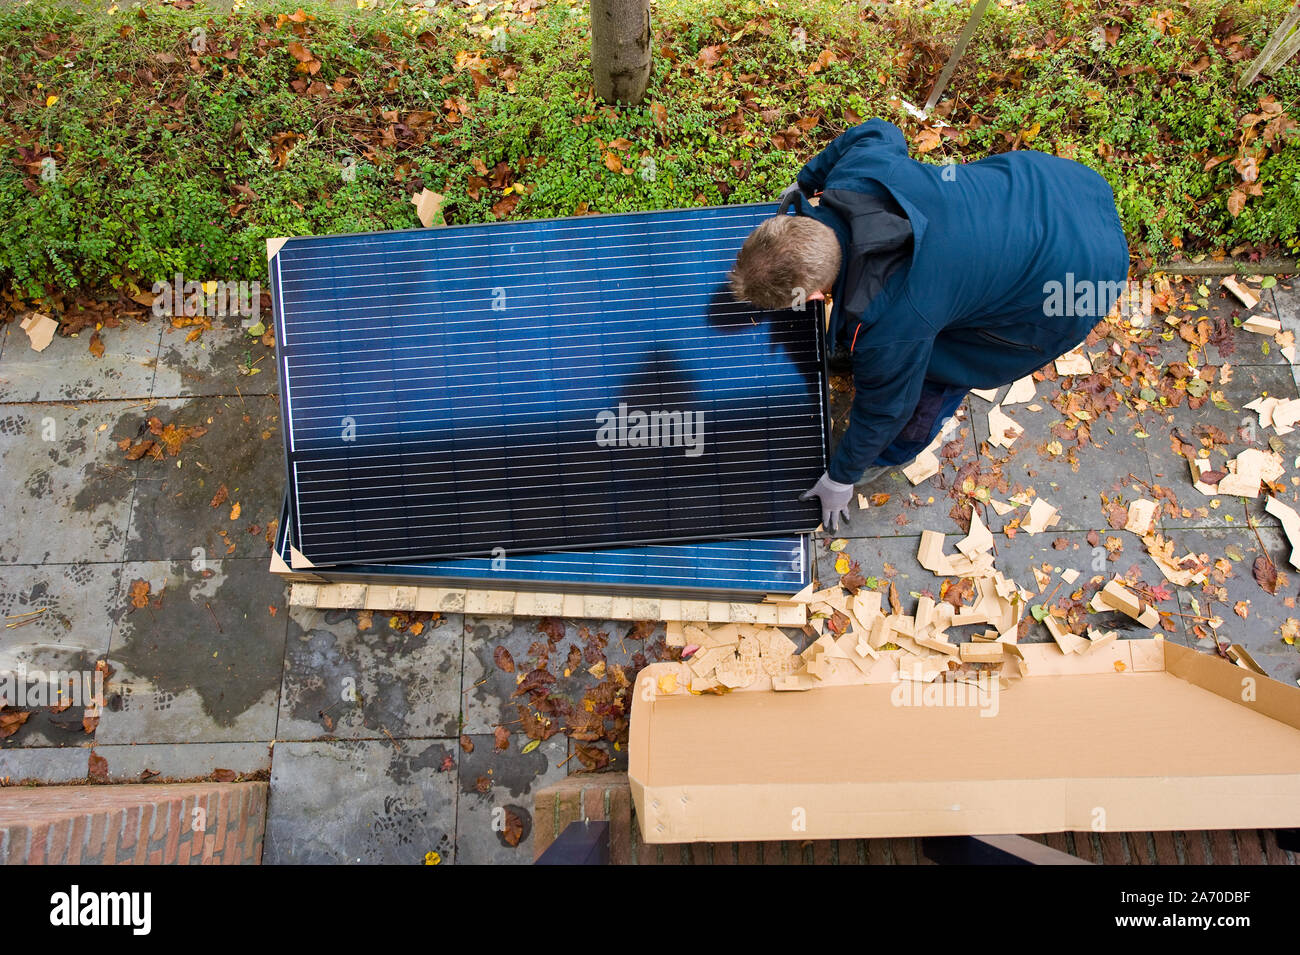 Un travailleur est ramasser des panneaux solaires à installer sur un toit aux Pays-Bas Banque D'Images